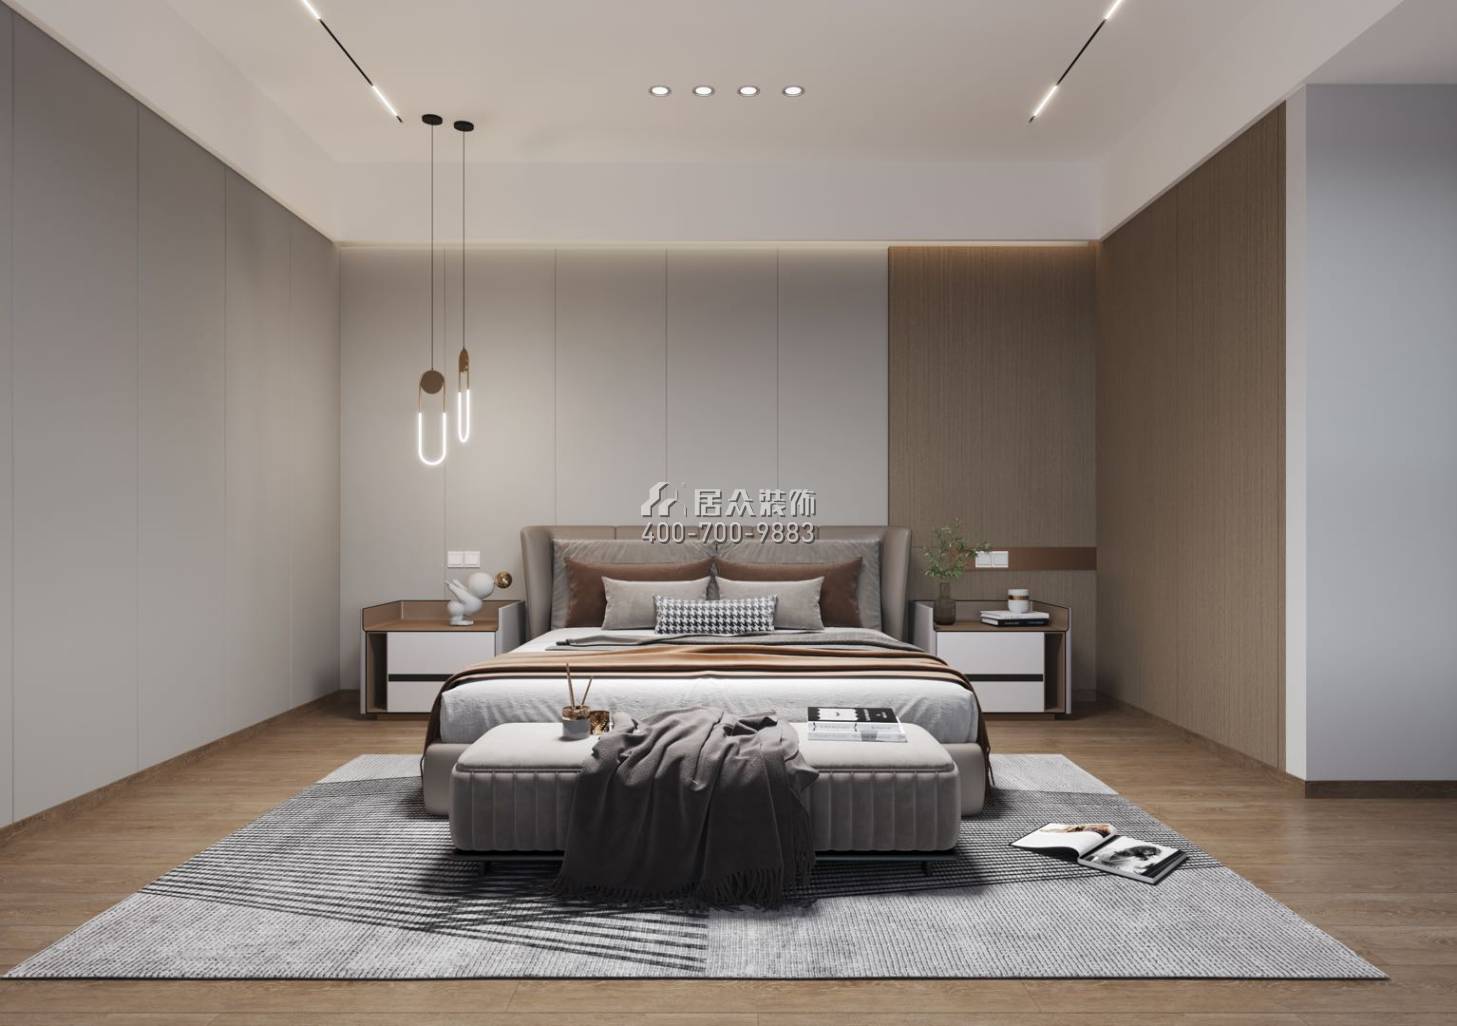 中信红树湾-三期638平方米现代简约风格复式户型卧室装修效果图